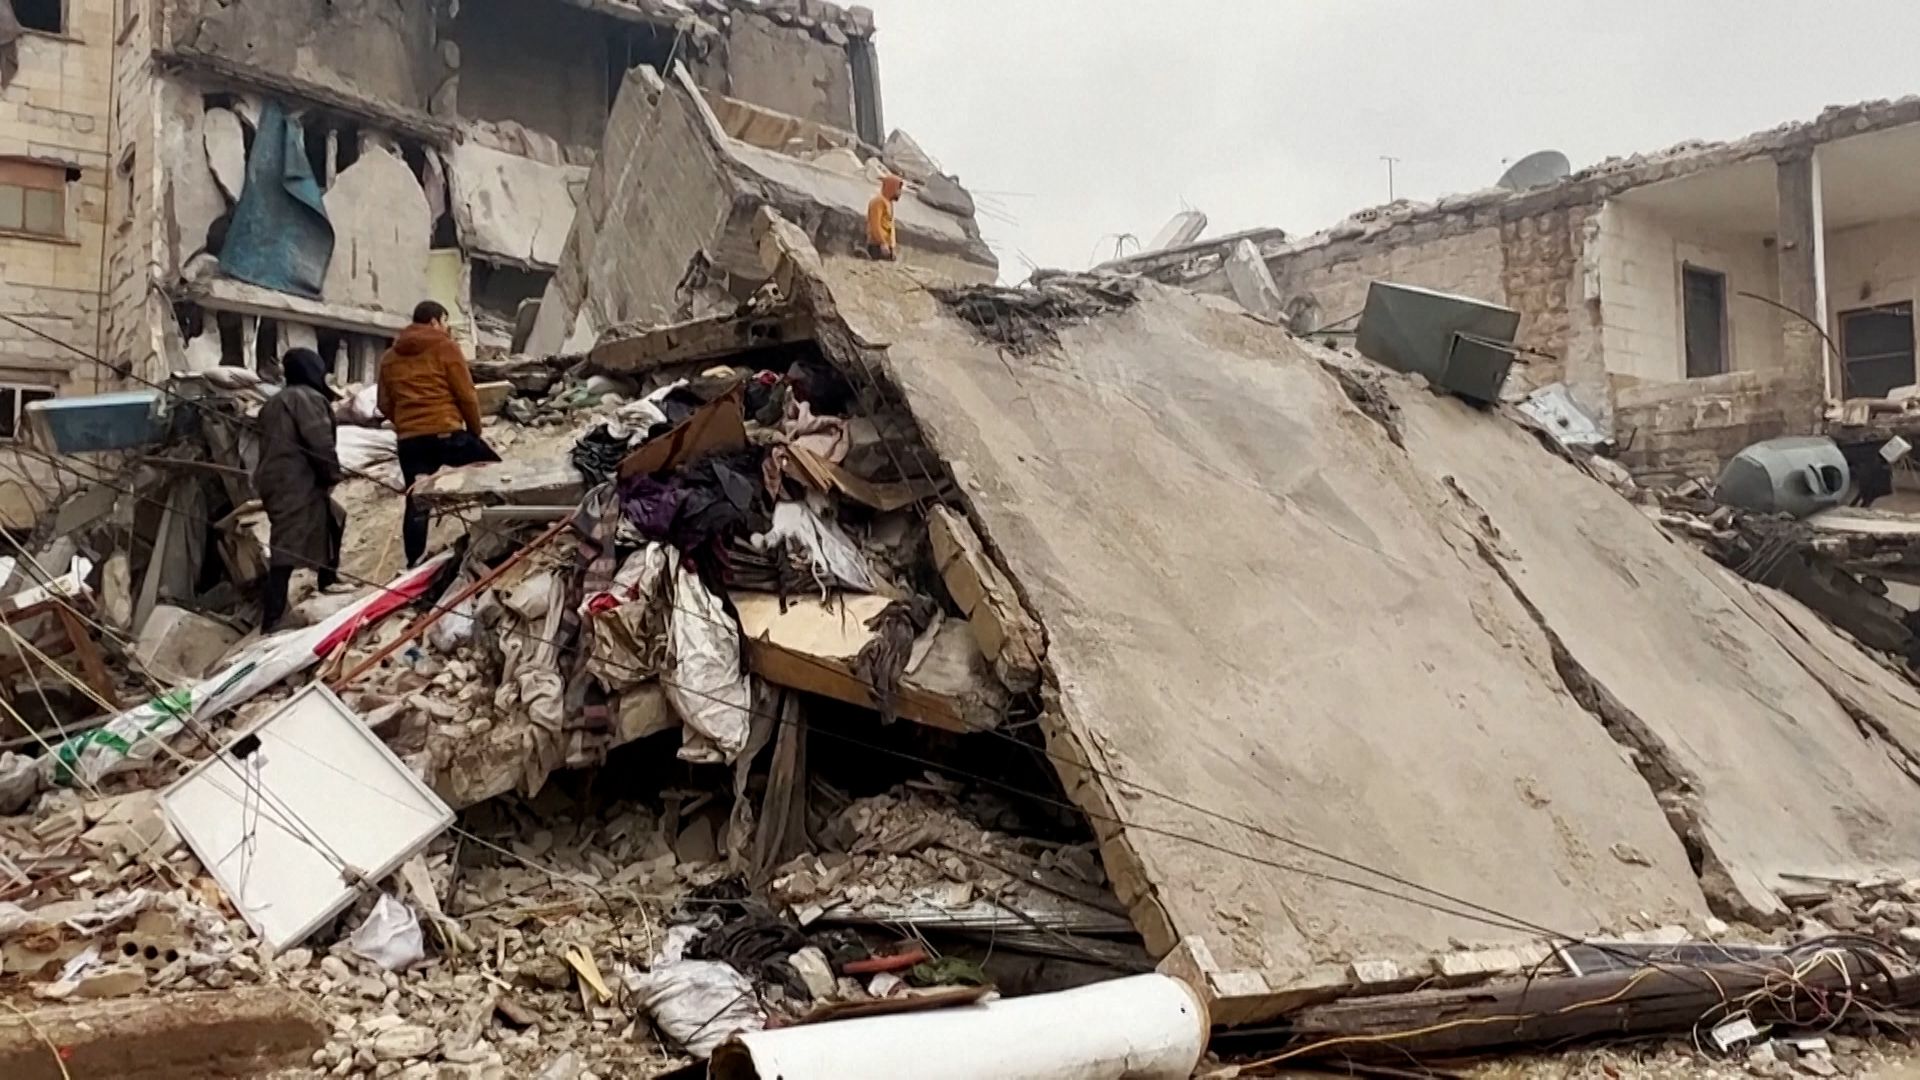 Turkey-Syria earthquake: More than 4,300 dead after powerful quake hits  region | CNN